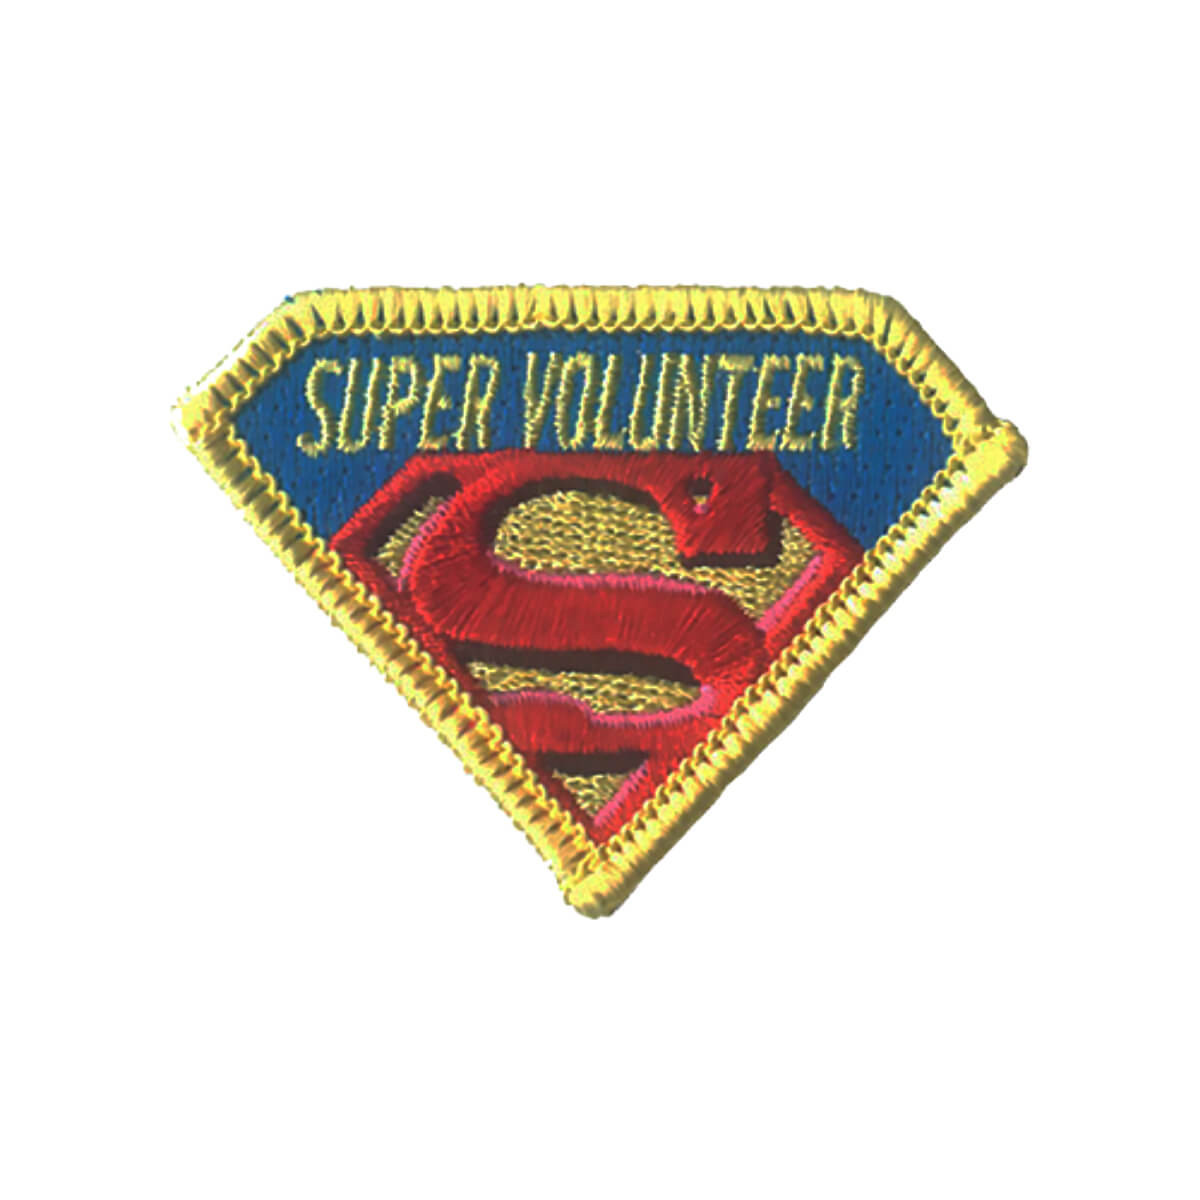 Super Volunteer - W